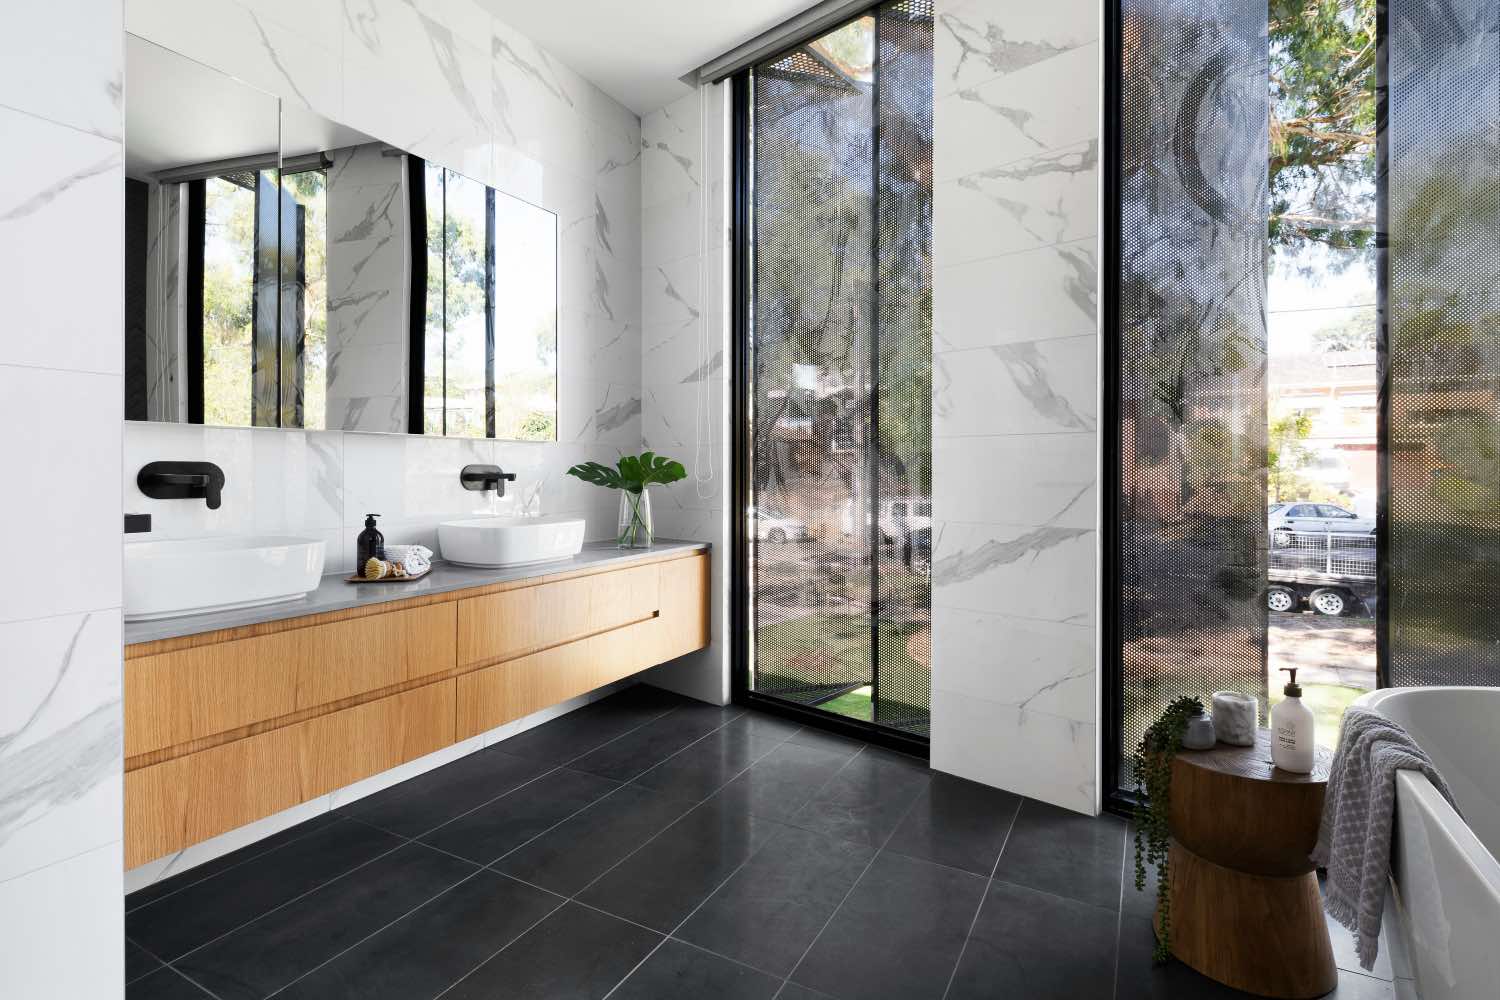 baño blanco y negro moderno con mueble de madera y pared de mármol